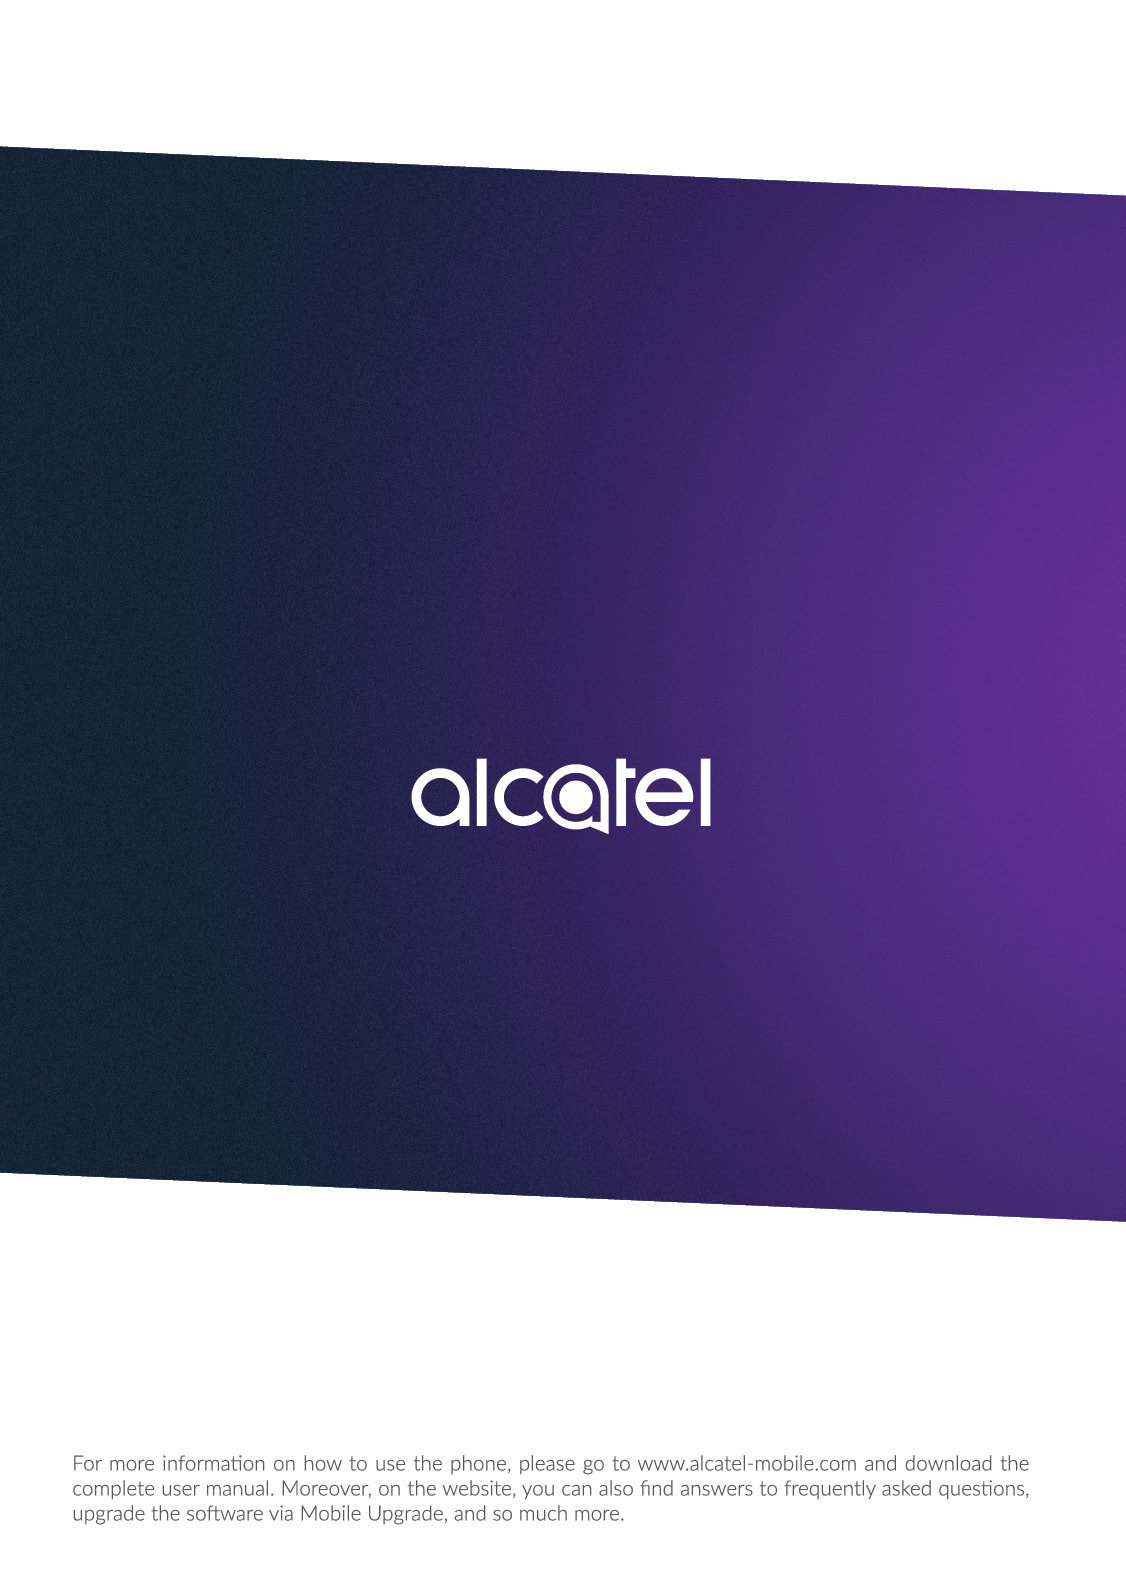 Voor meer informatie over het gebruik van uw mobiele telefoon gaat u naar www.alcatel-mobile.